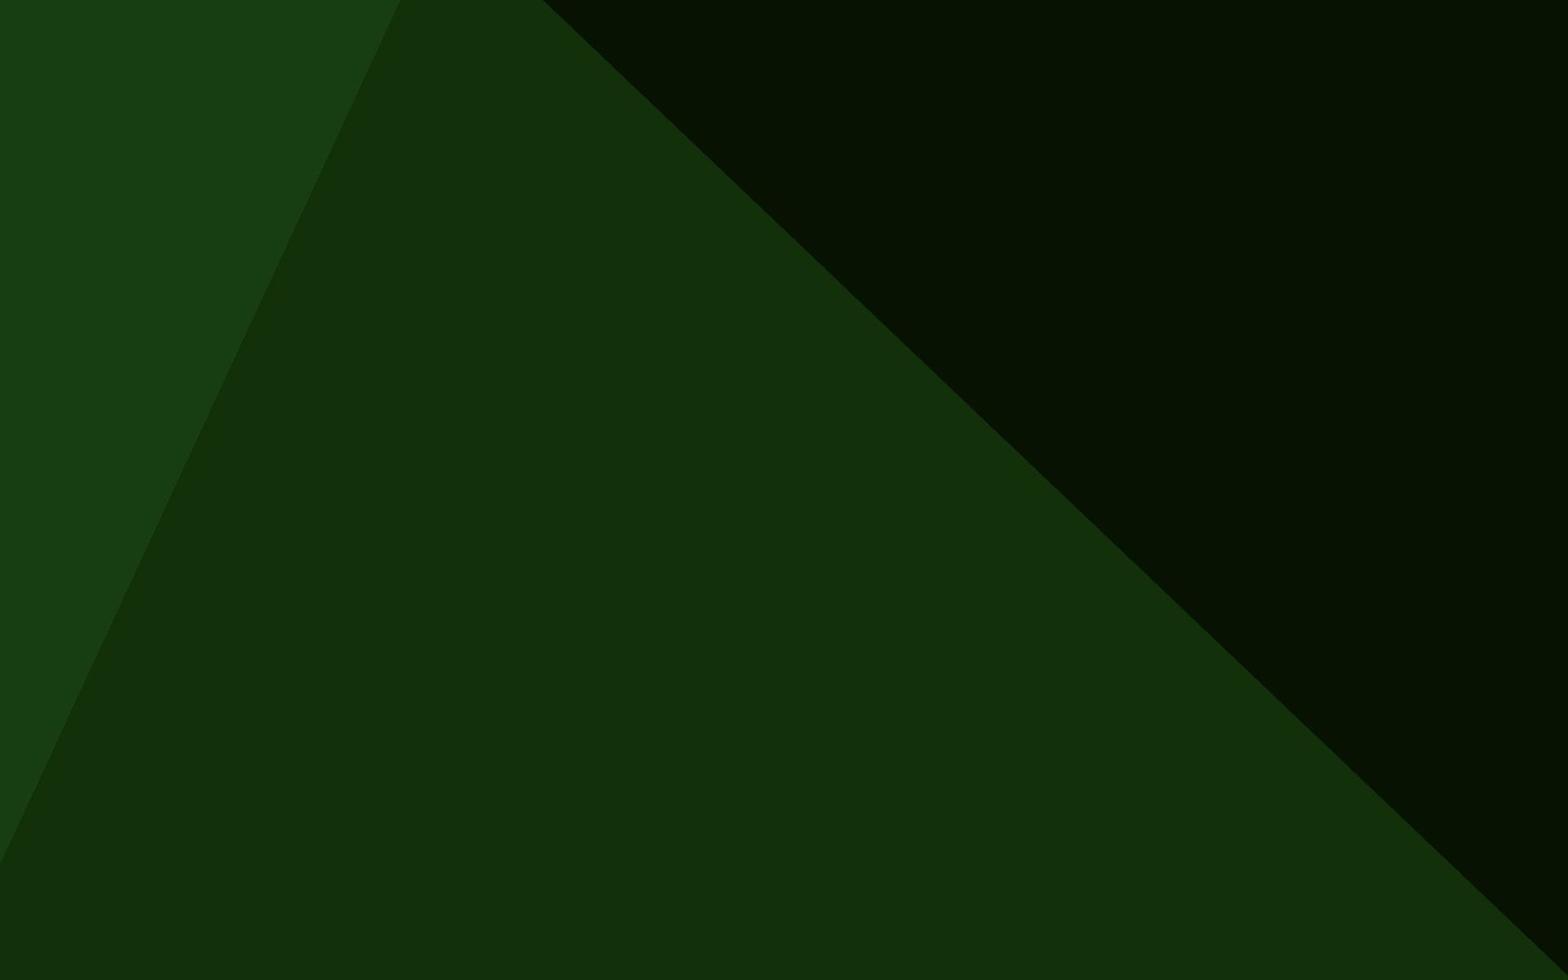 modelo poligonal de vetor verde claro.